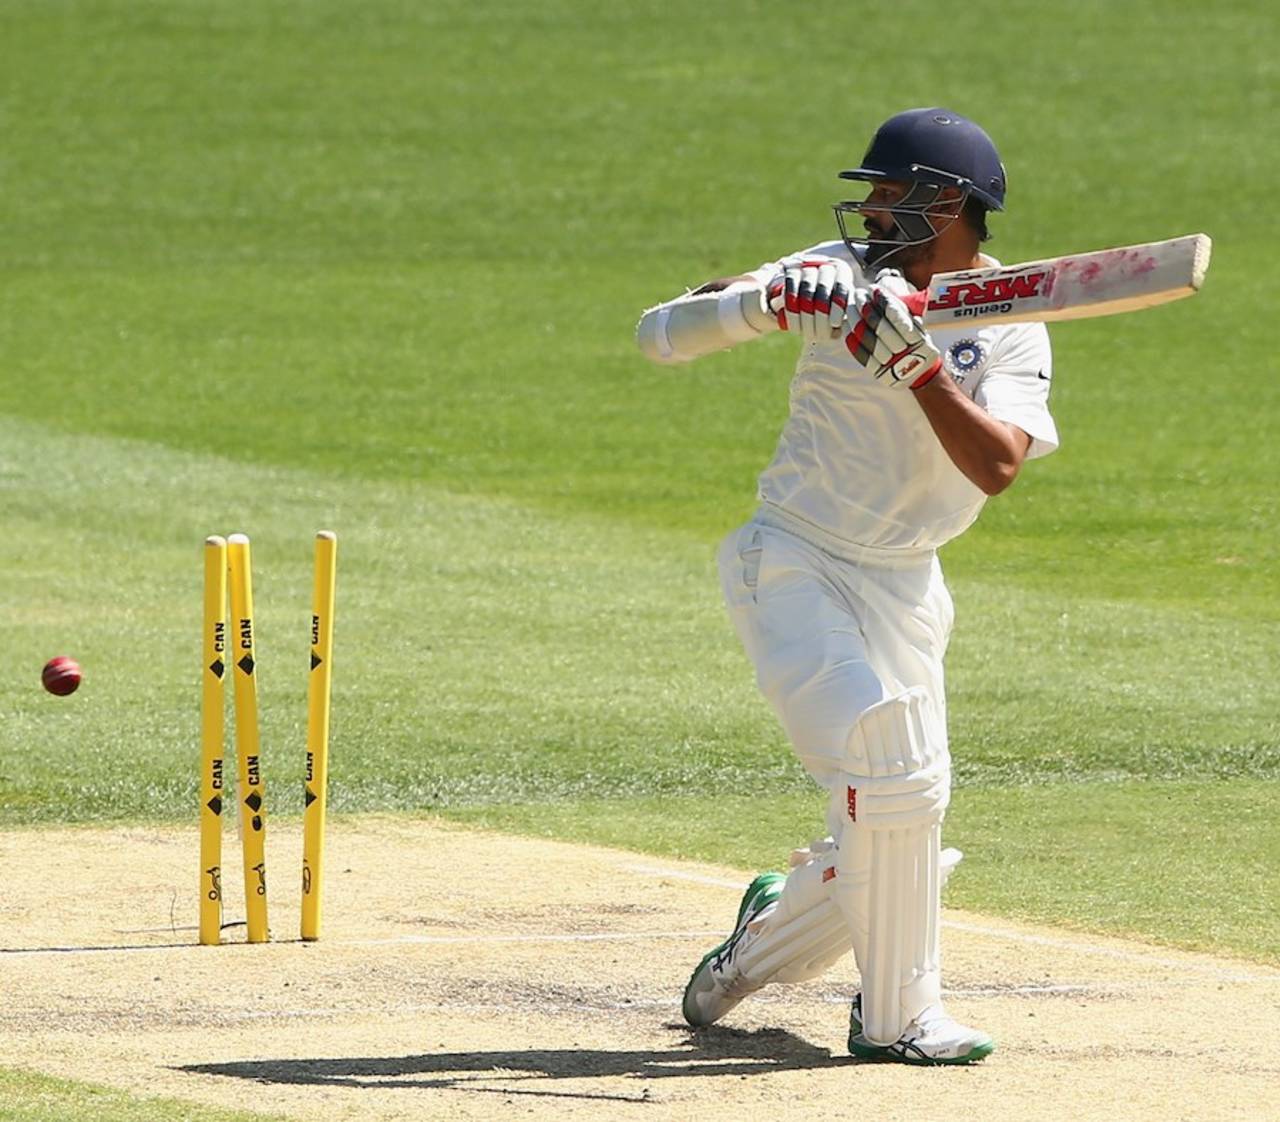 Shikhar Dhawan was bowled off the inside edge, Australia v India, 1st Test, Adelaide, 3rd day, December 11, 2014